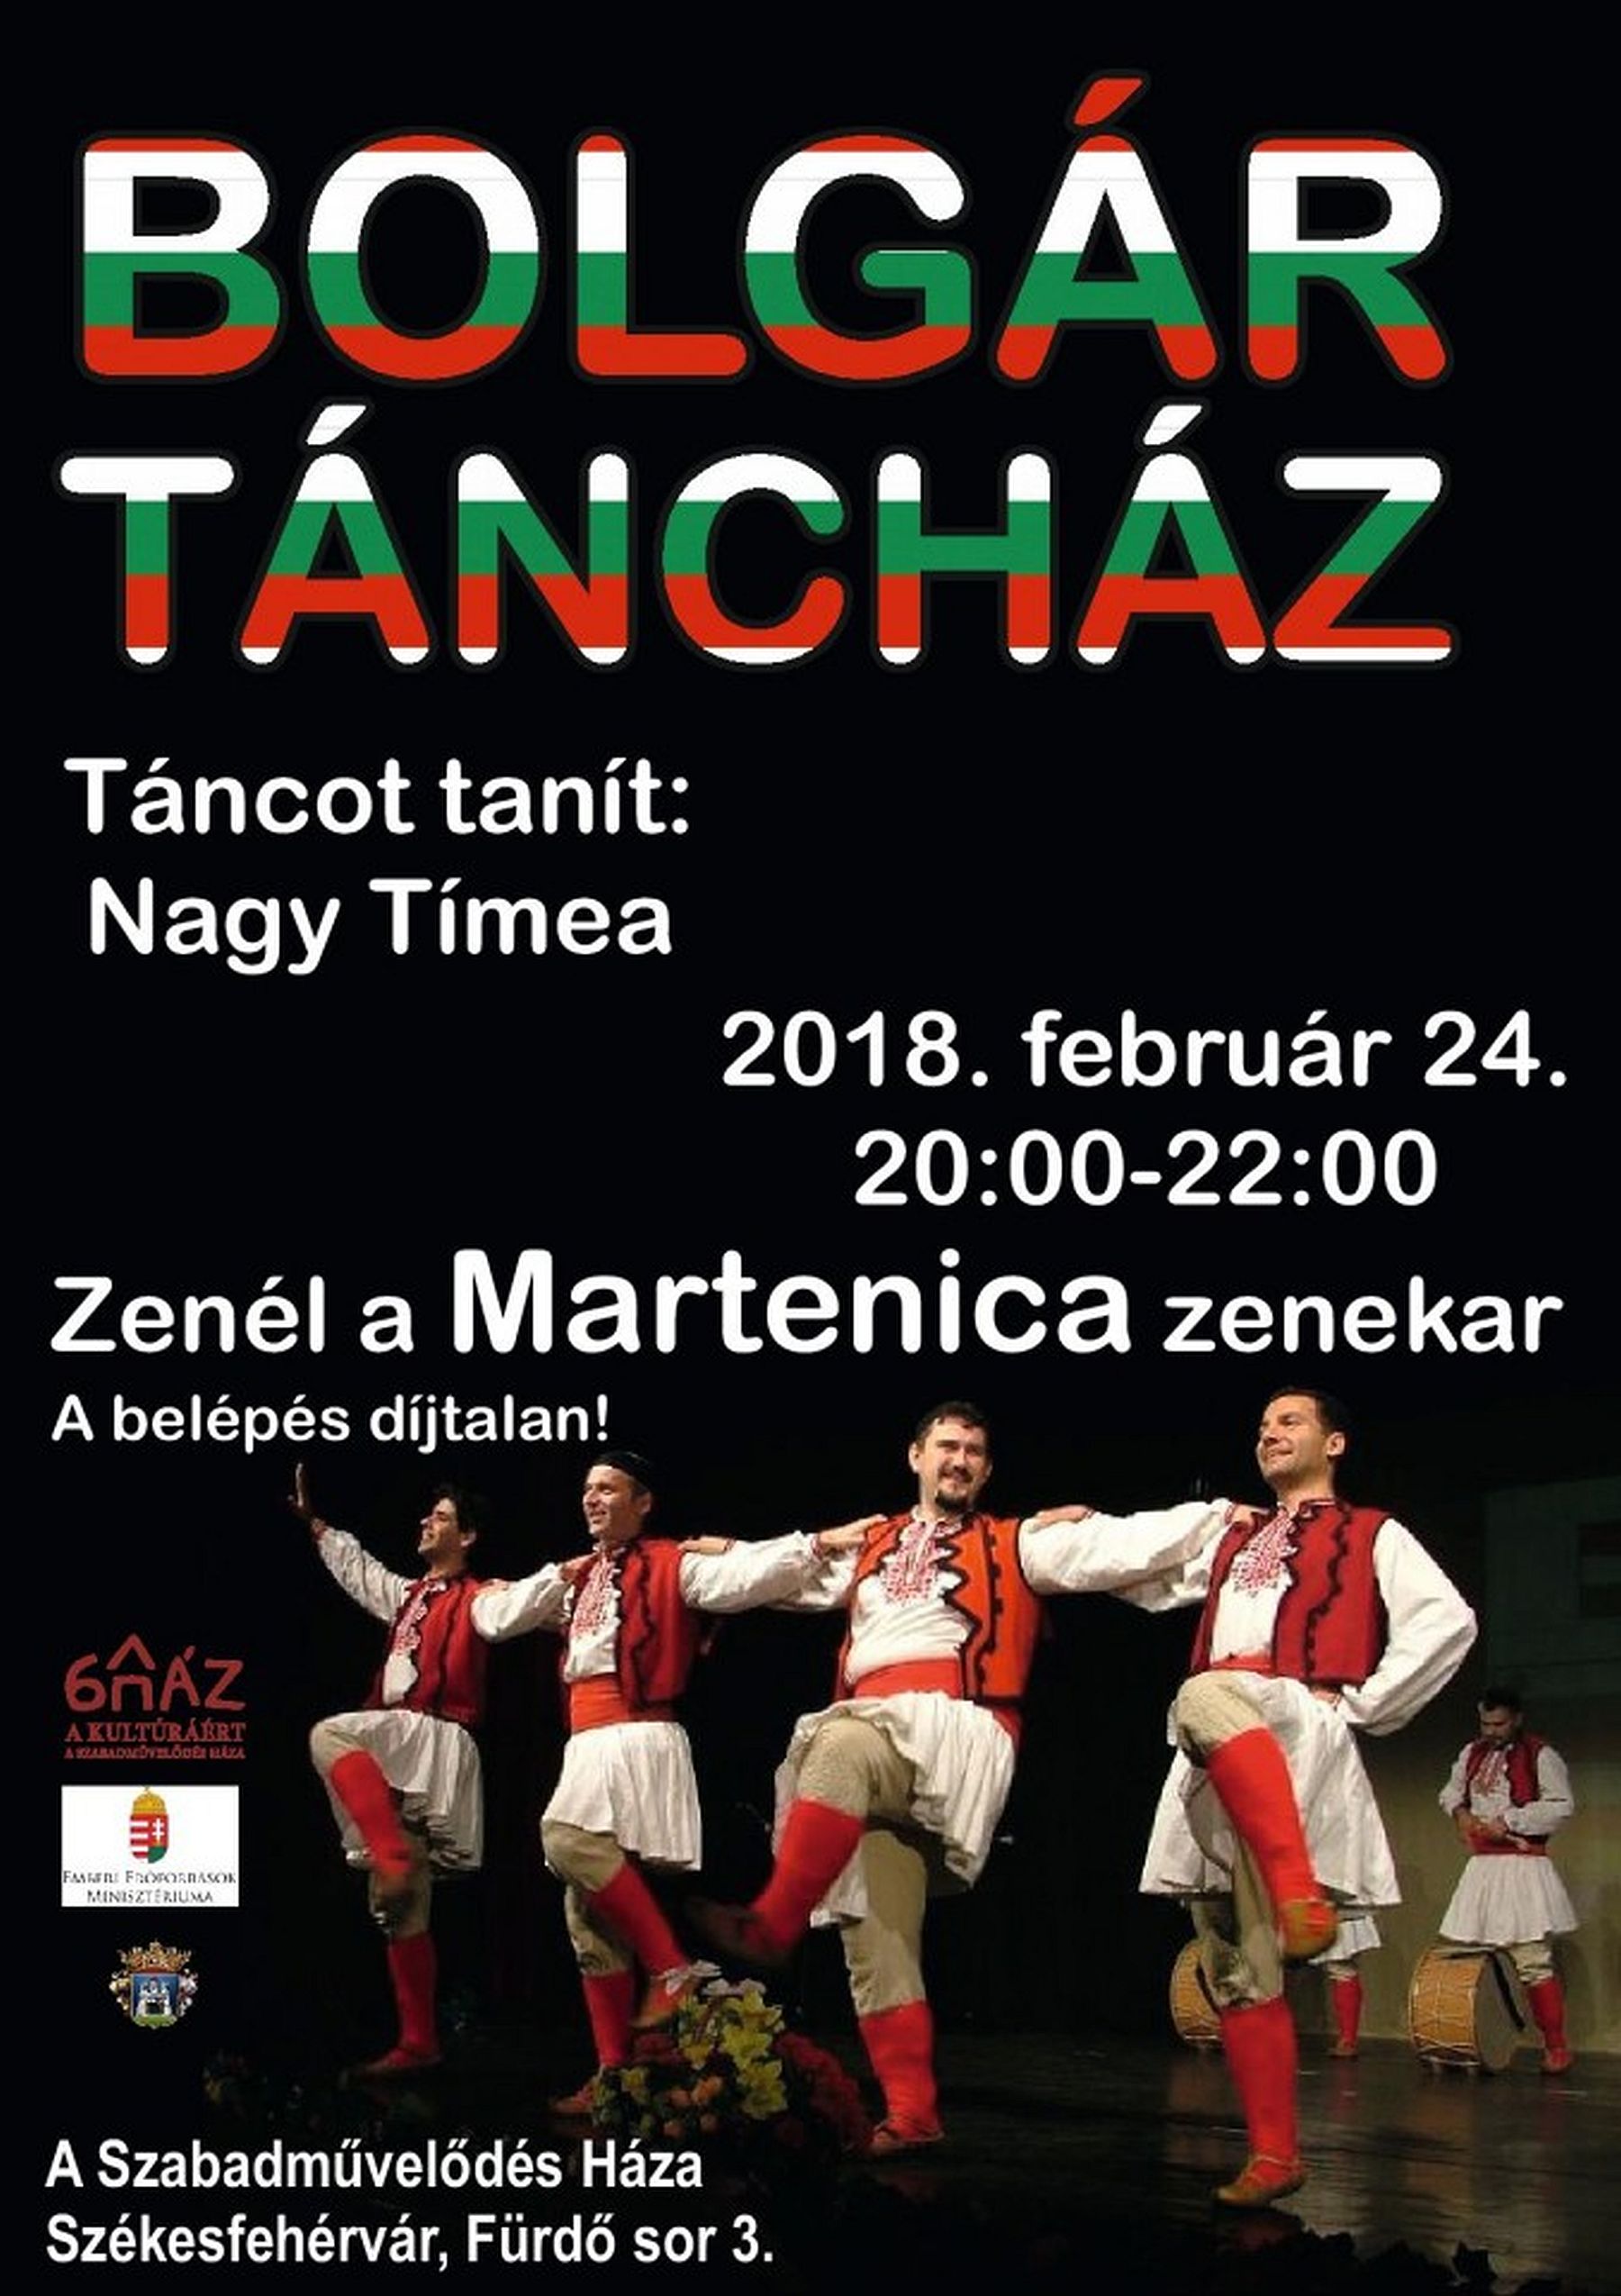 Bolgár táncház lesz szombaton A Szabadművelődés Házában